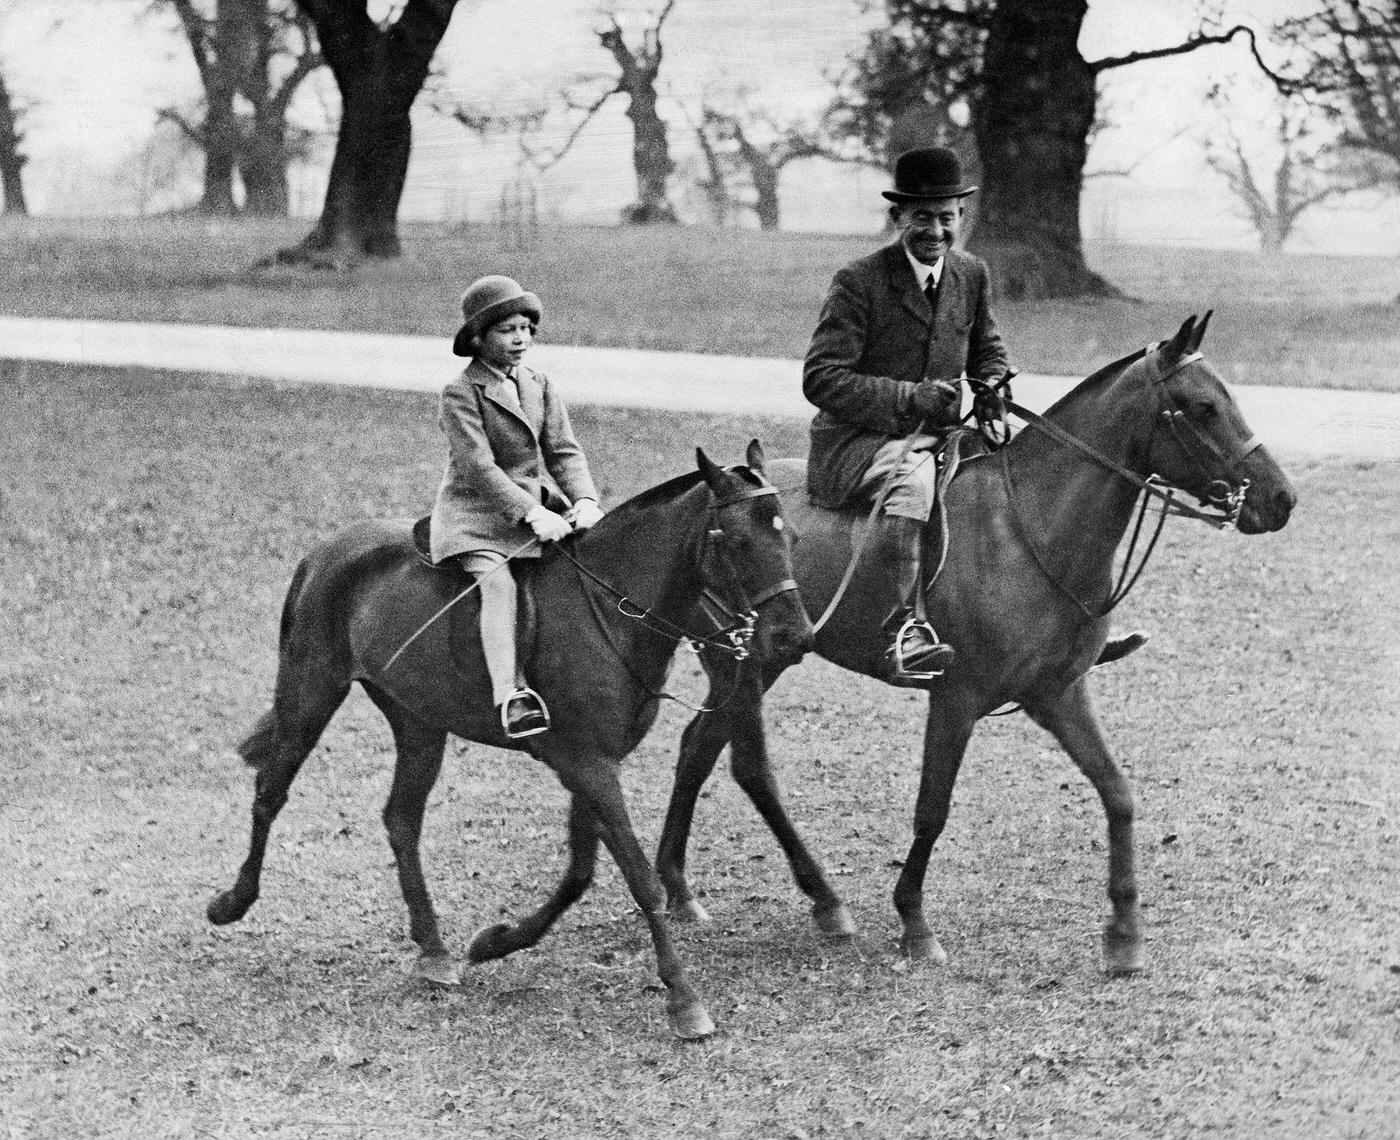 Queen Elizabeth II on Pony Ride in Windsor Park, 1934